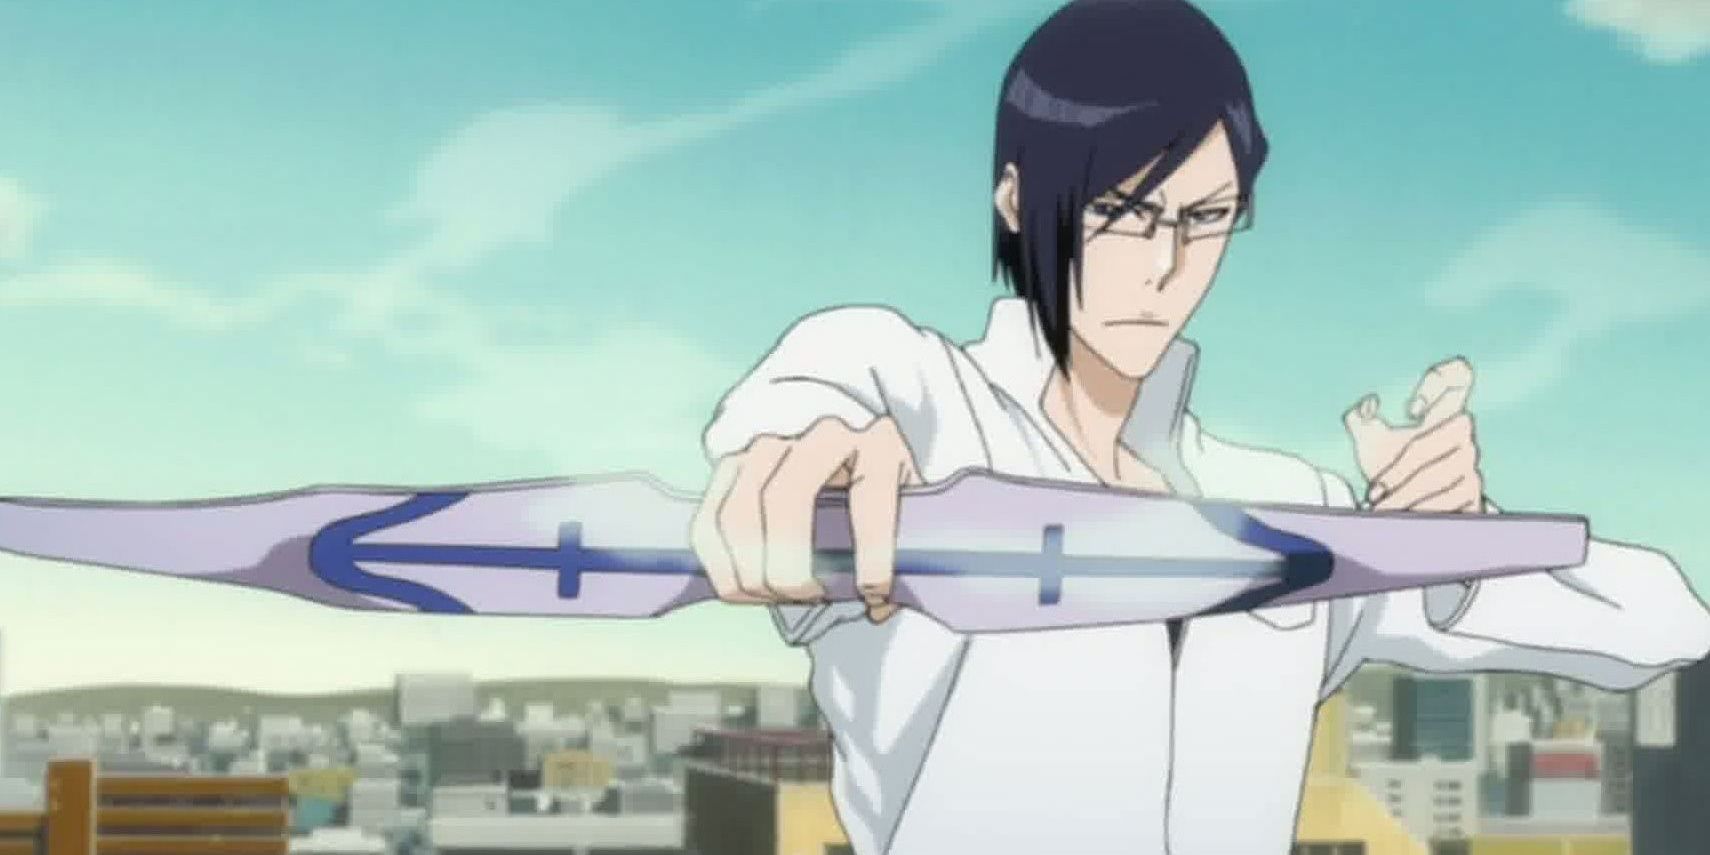 Uryu Ishida wielding a weapon in Bleach